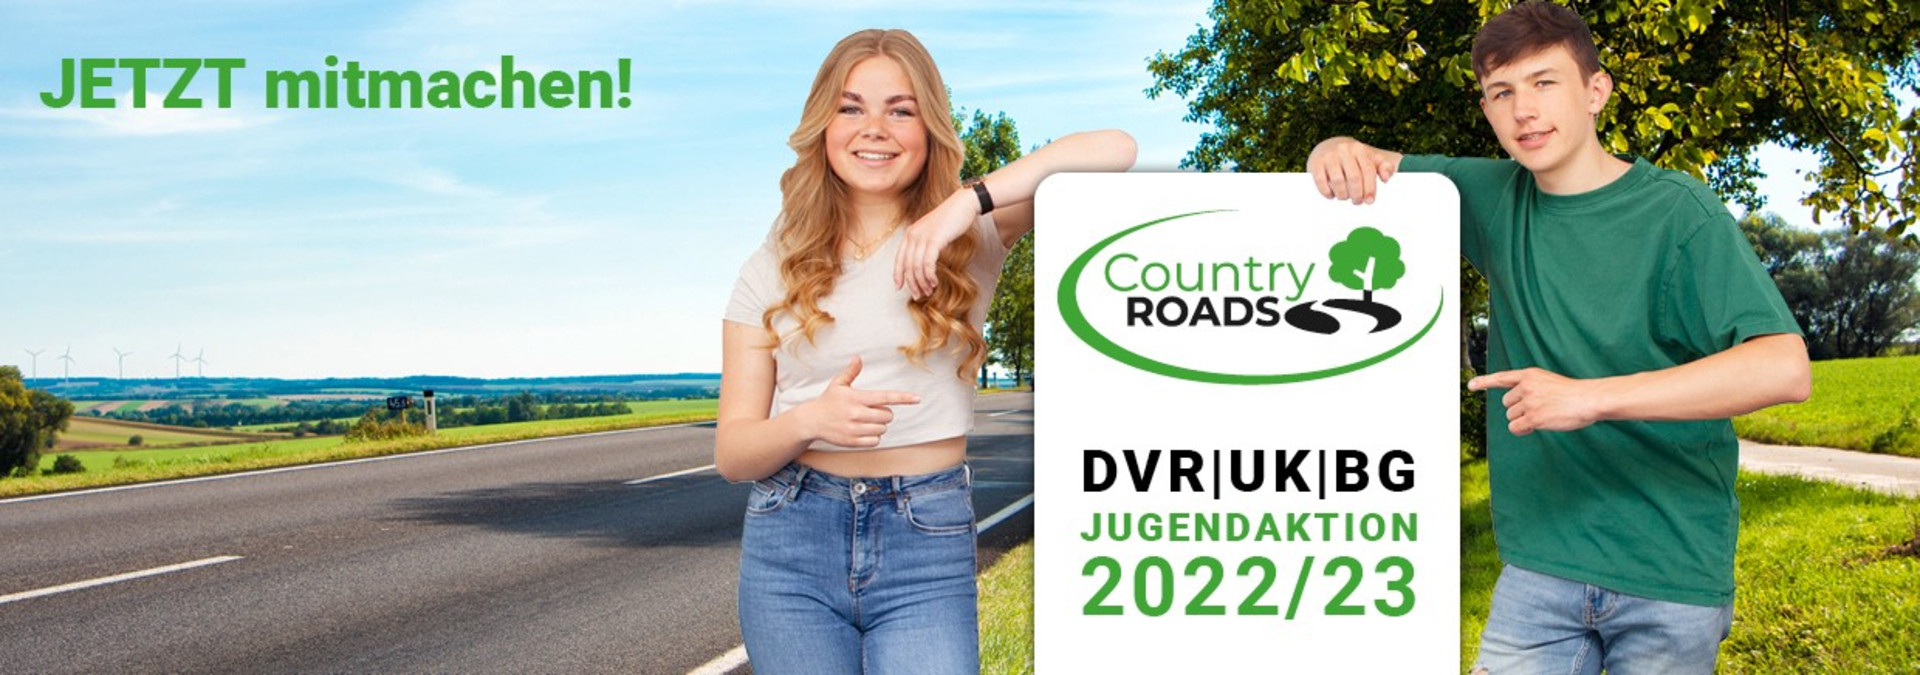 Zwei Jugendliche vor einem Banner "Country Roads" DVR/UK|BG 2022/23, im Hintergrund eine Landstraße im Sommer